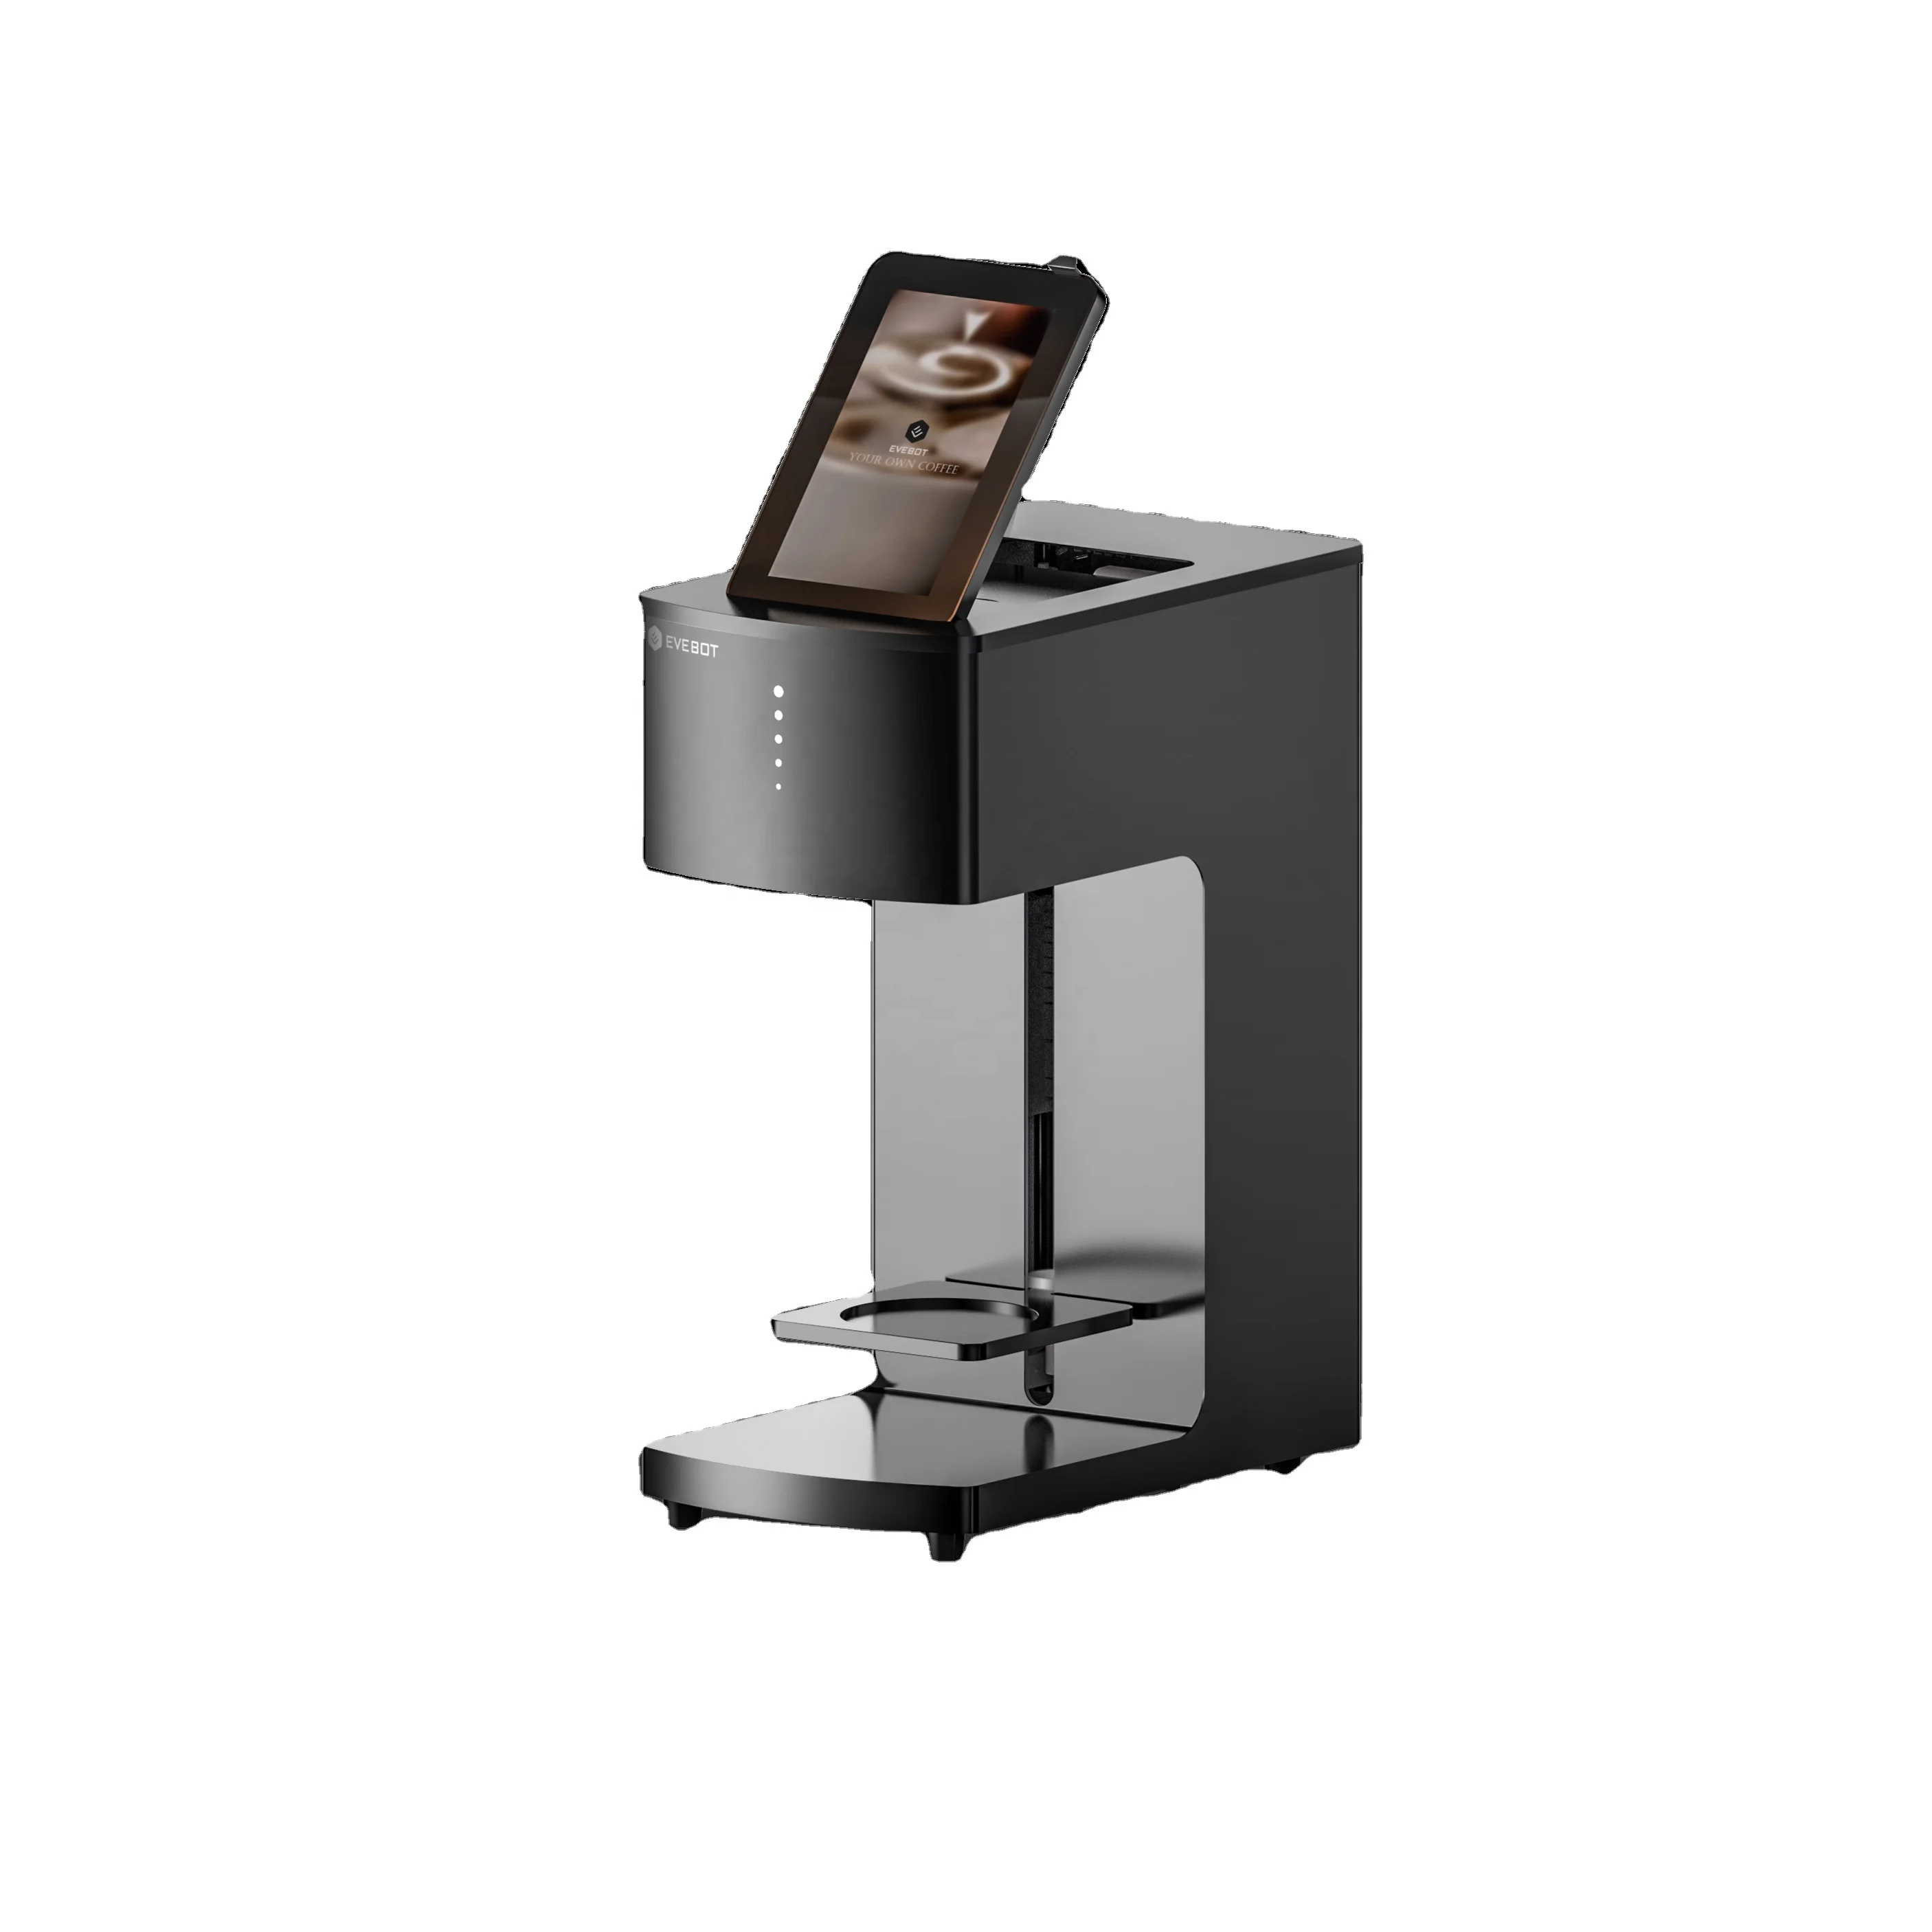 Supplier of Coffee Printer from Shenzhen, China by  ShenzhenRefinecolorTechnologyCo.LTD.